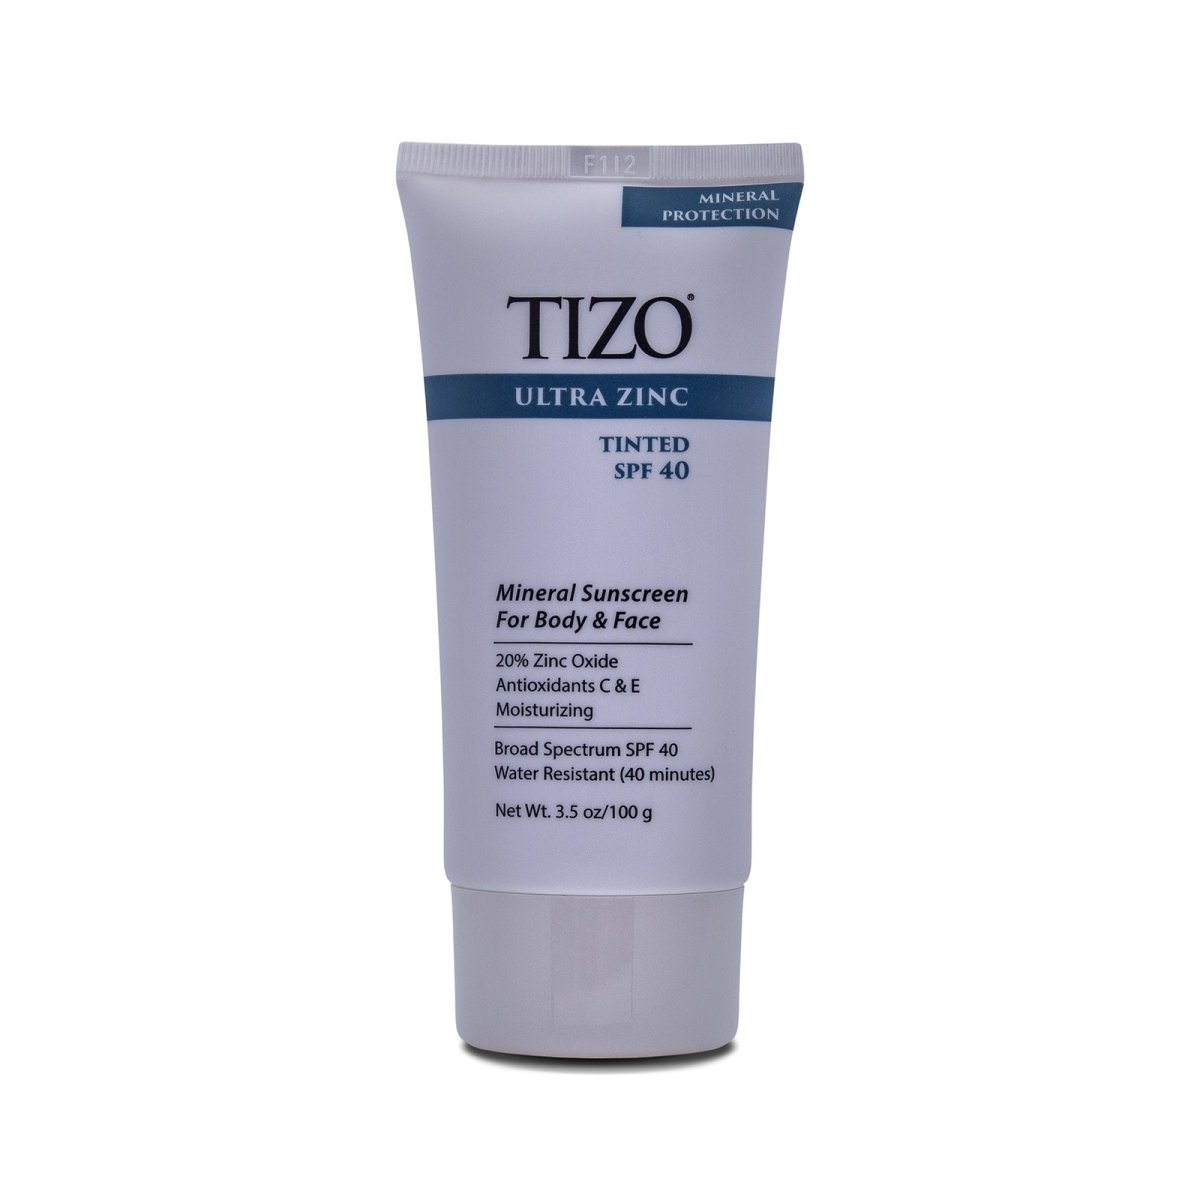 TiZO Ultra Zinc Body & Face Sunscreen Tinted SPF 40